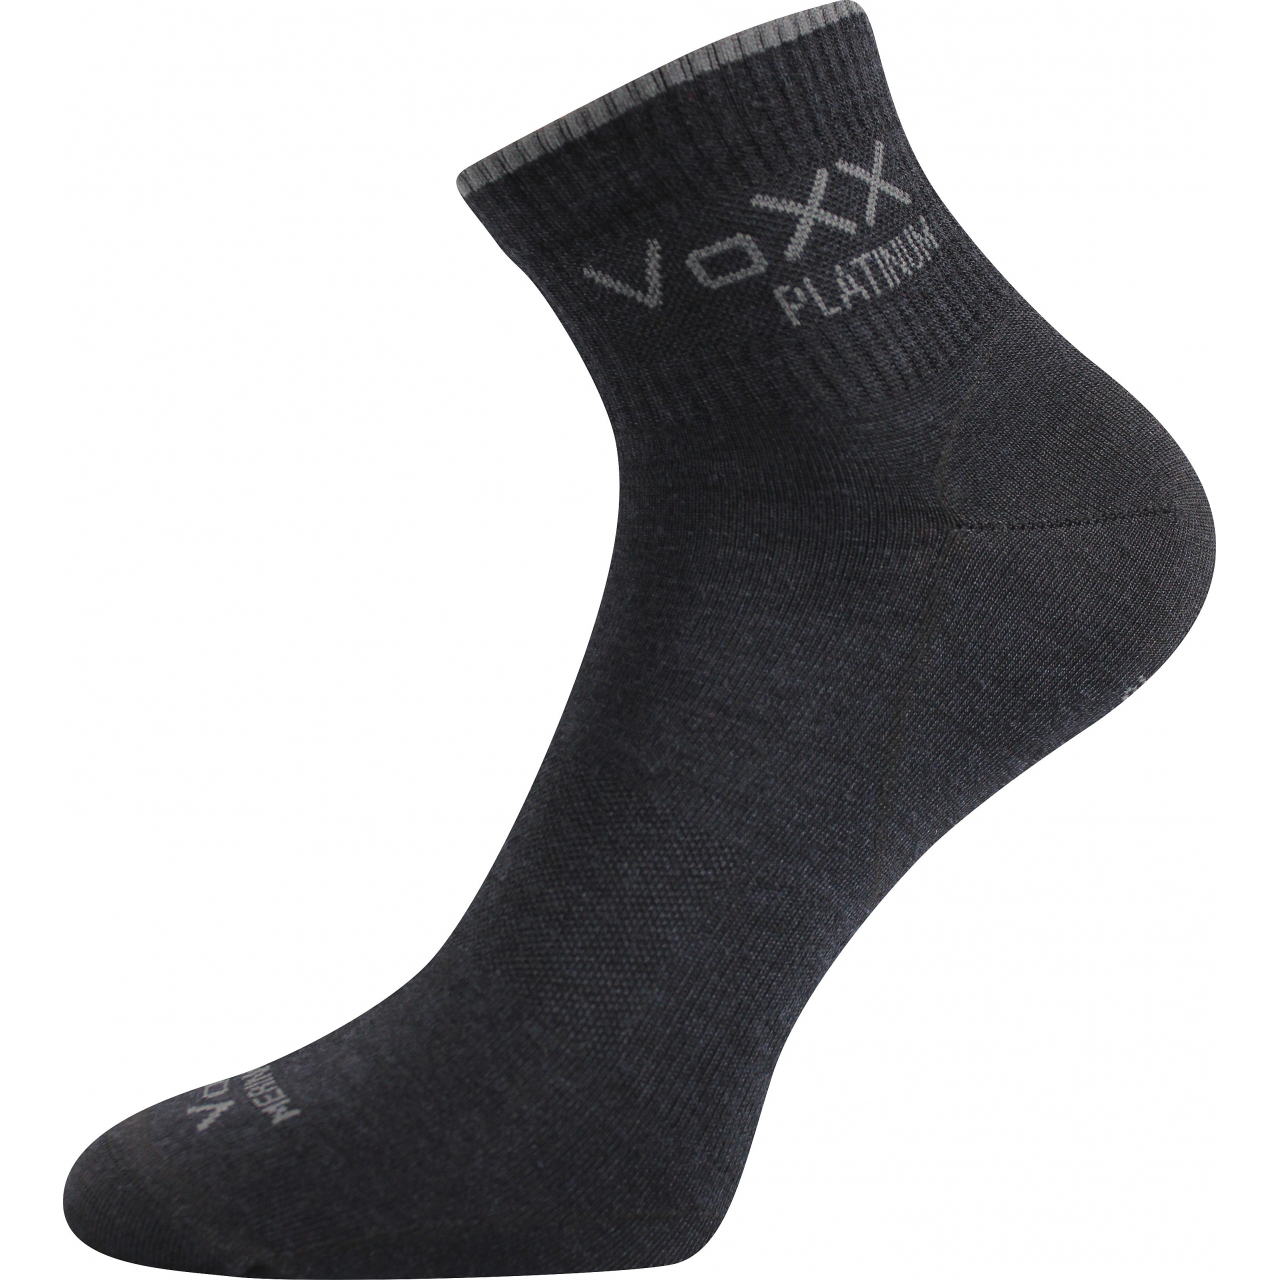 Ponožky klasické unisex Voxx Radik - černé, 43-46